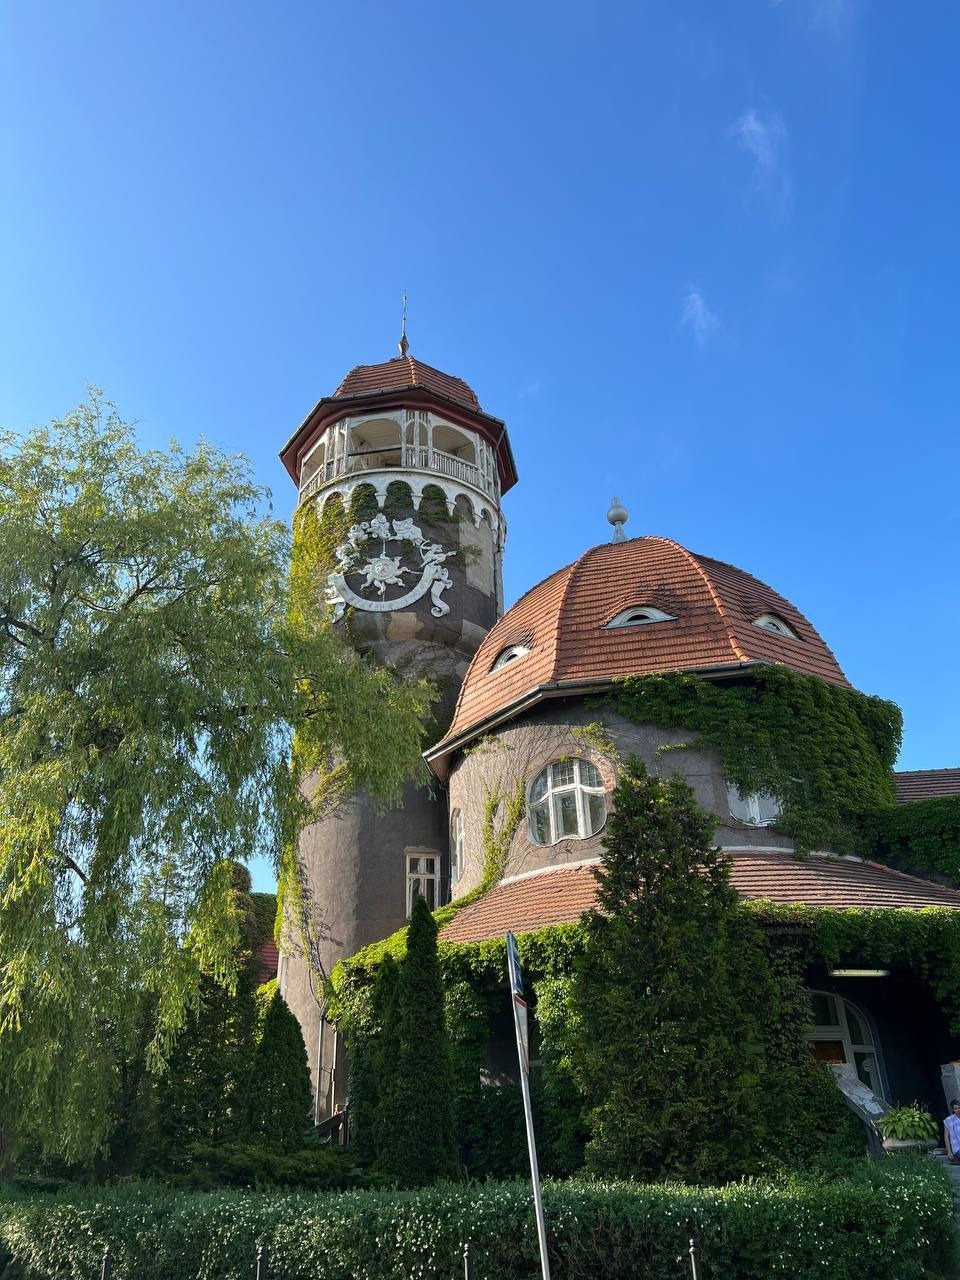  Водонапорная башня «Раушен» — исторический памятник архитектуры